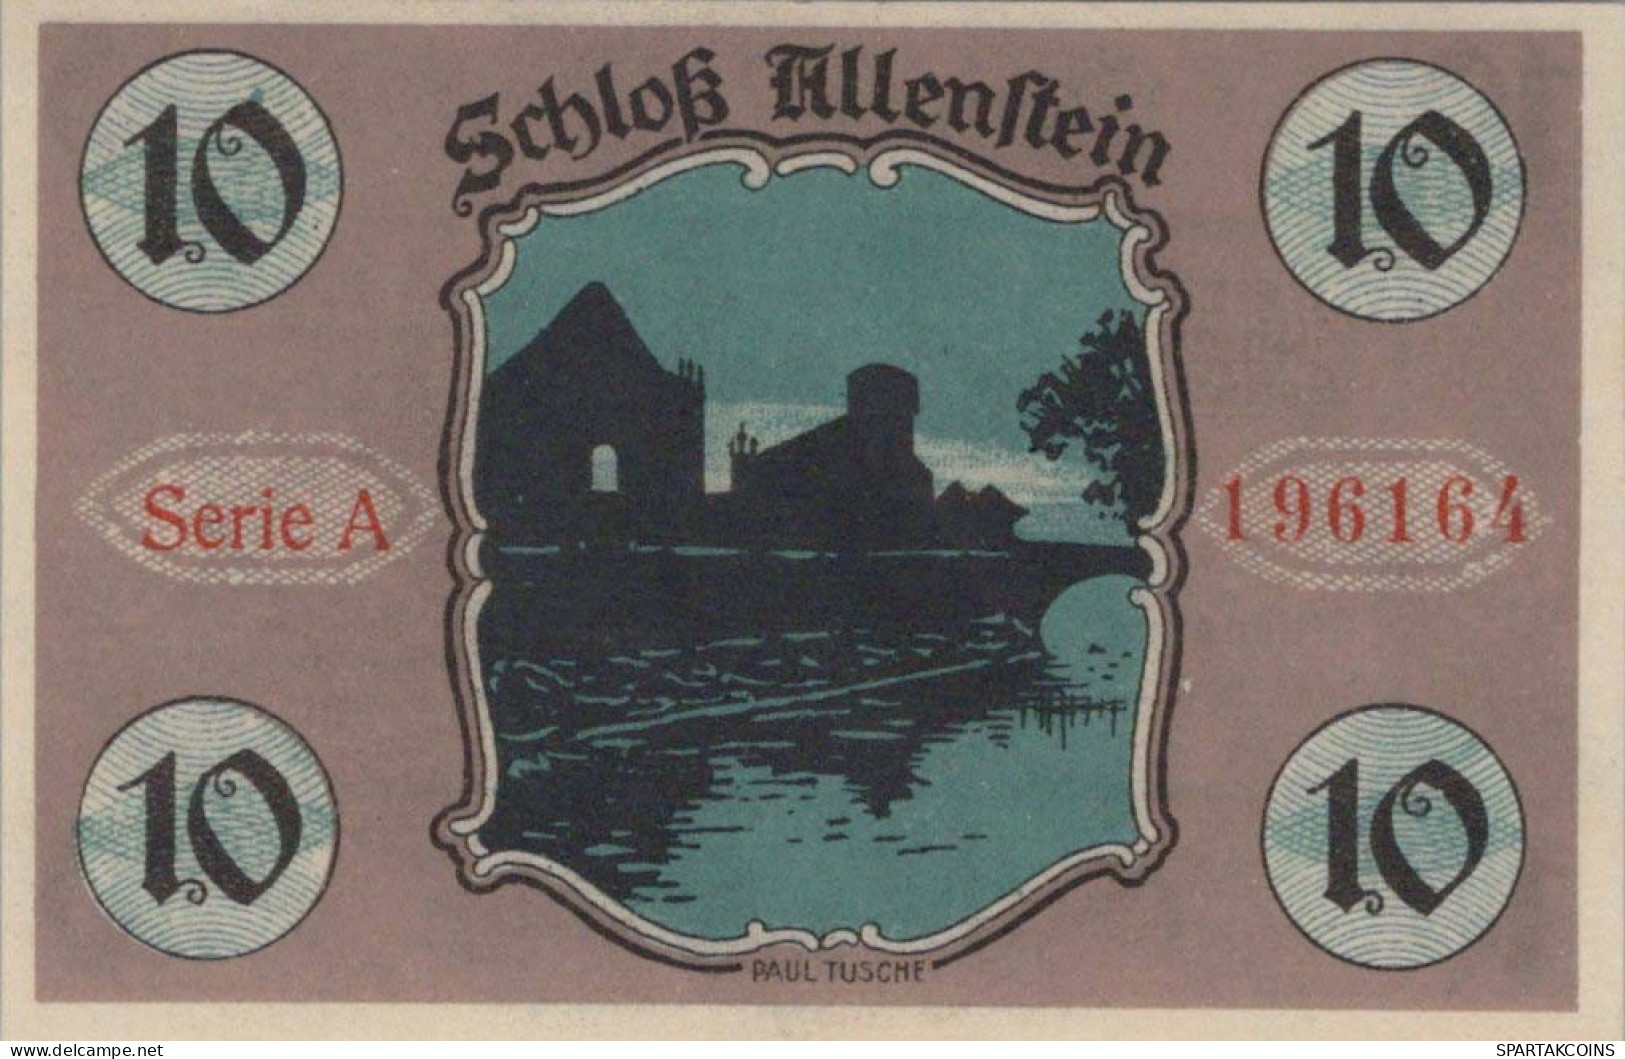 10 PFENNIG 1921 Stadt ALLENSTEIN East PRUSSLAND UNC DEUTSCHLAND Notgeld #PH133 - [11] Local Banknote Issues